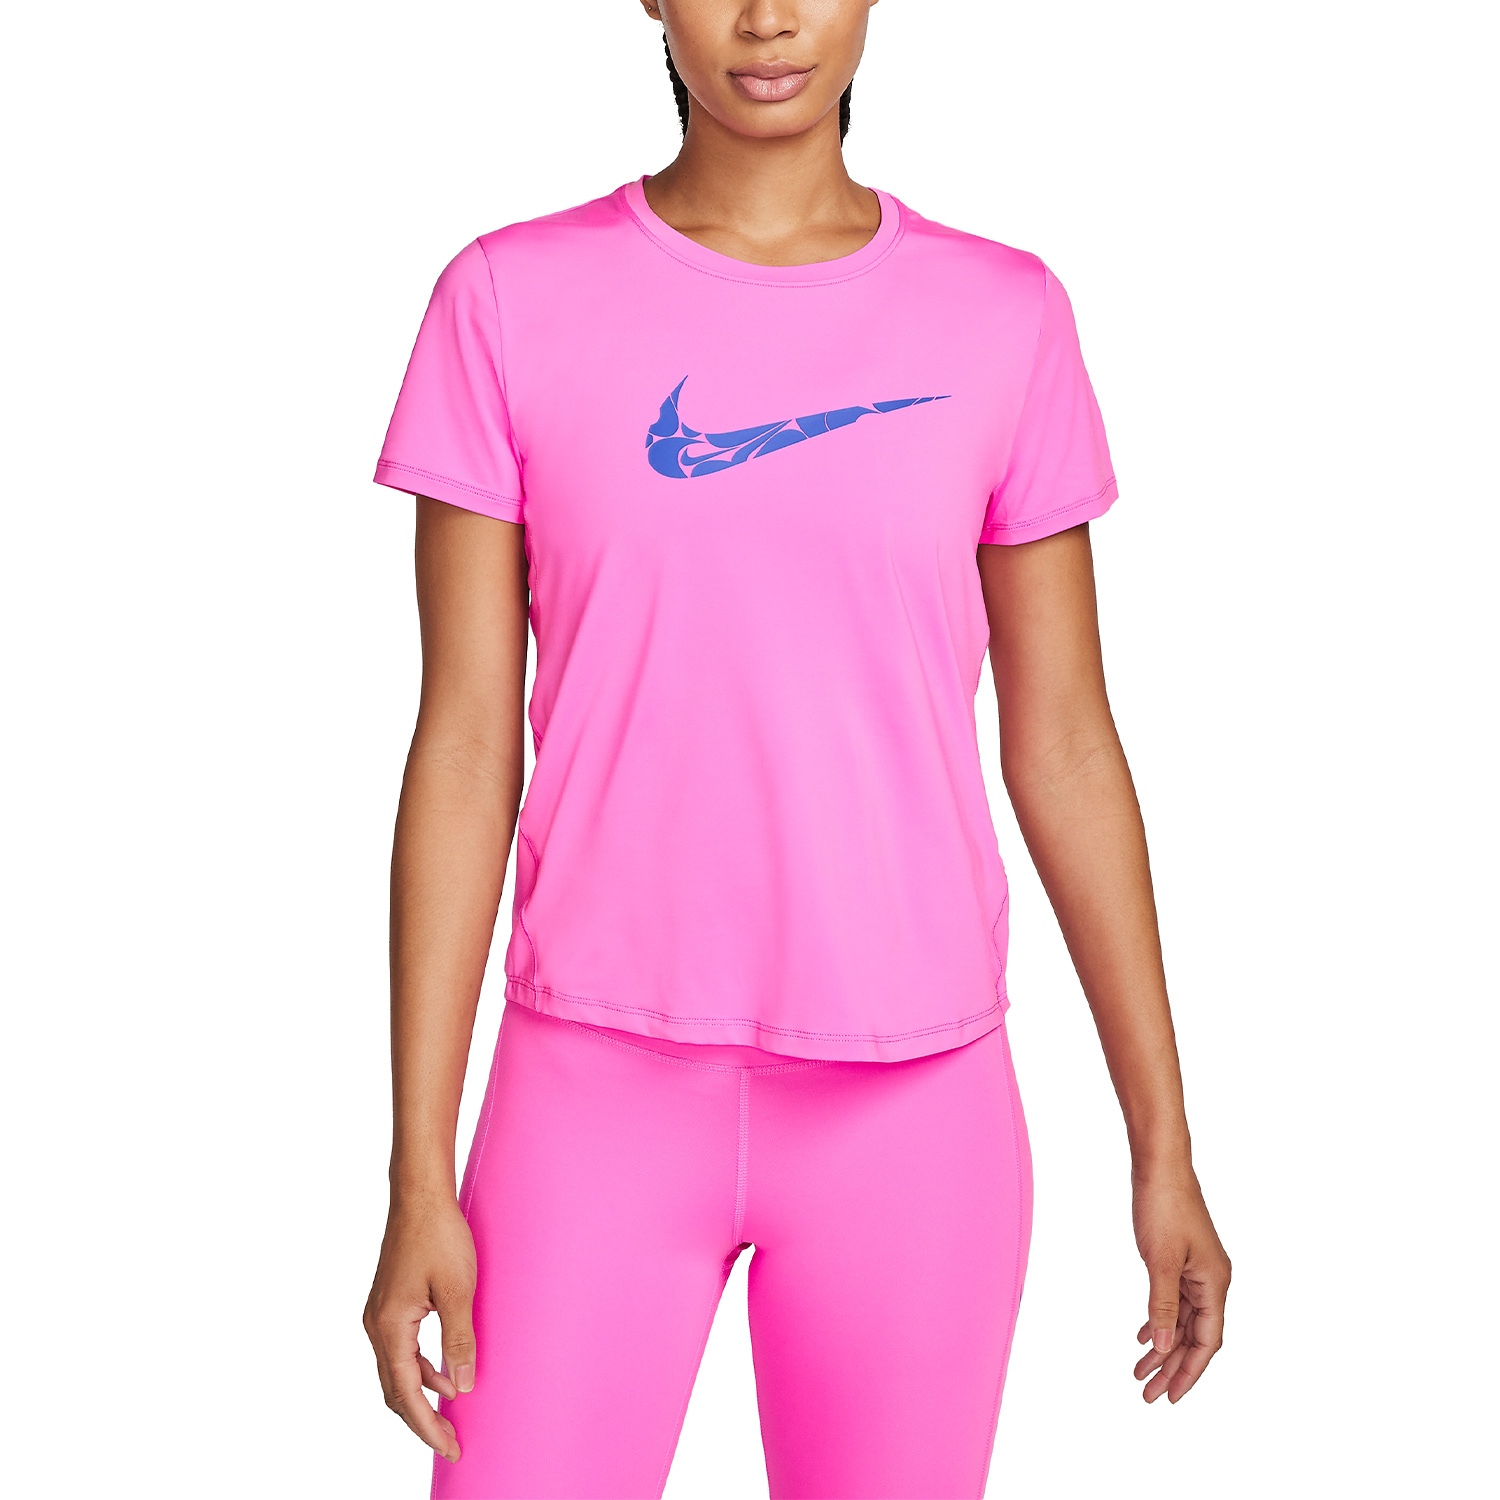 Nike One Swoosh Camiseta - Playful Pink/Hyper Royal